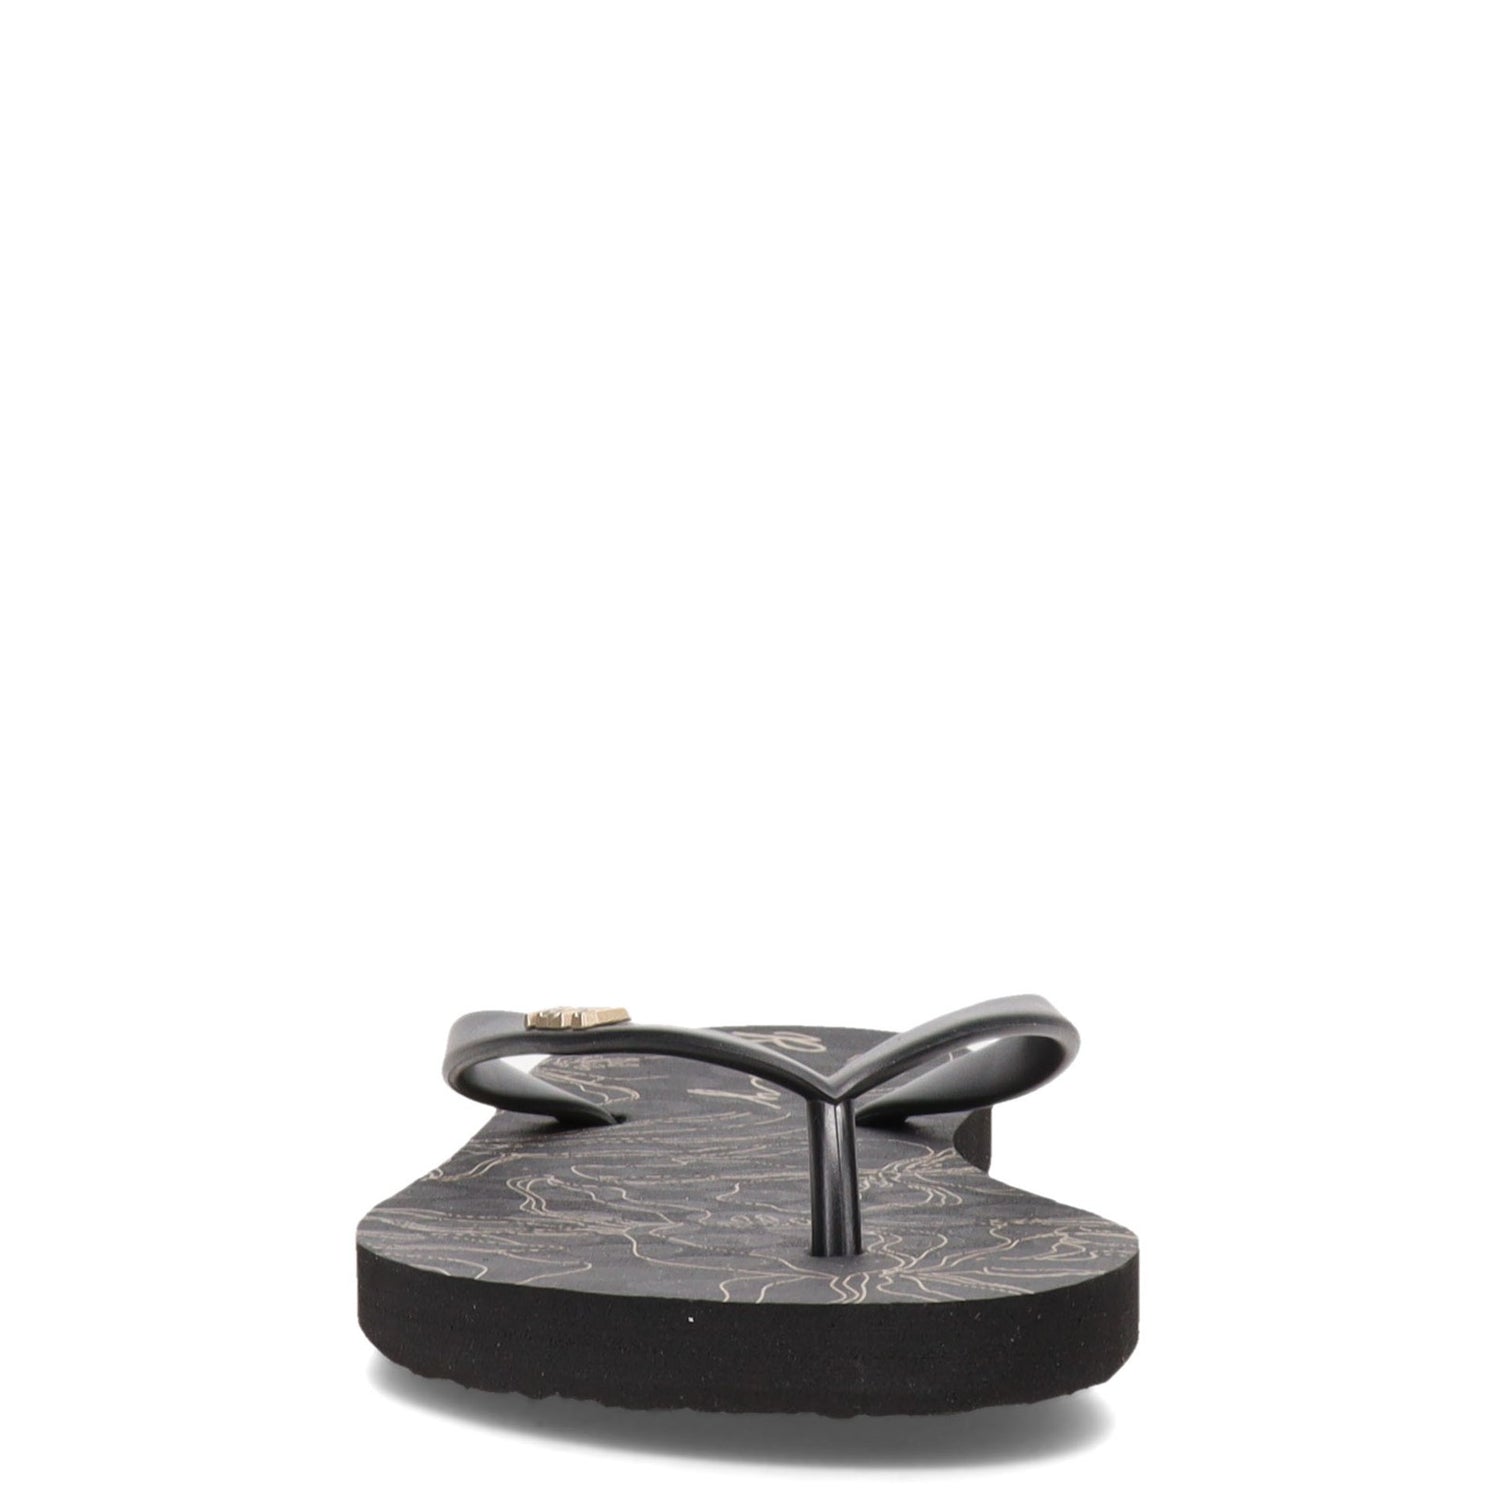 Peltz Shoes  Women's Roxy Viva Stamp II Sandal BLACK / GOLD ARJL100683-201